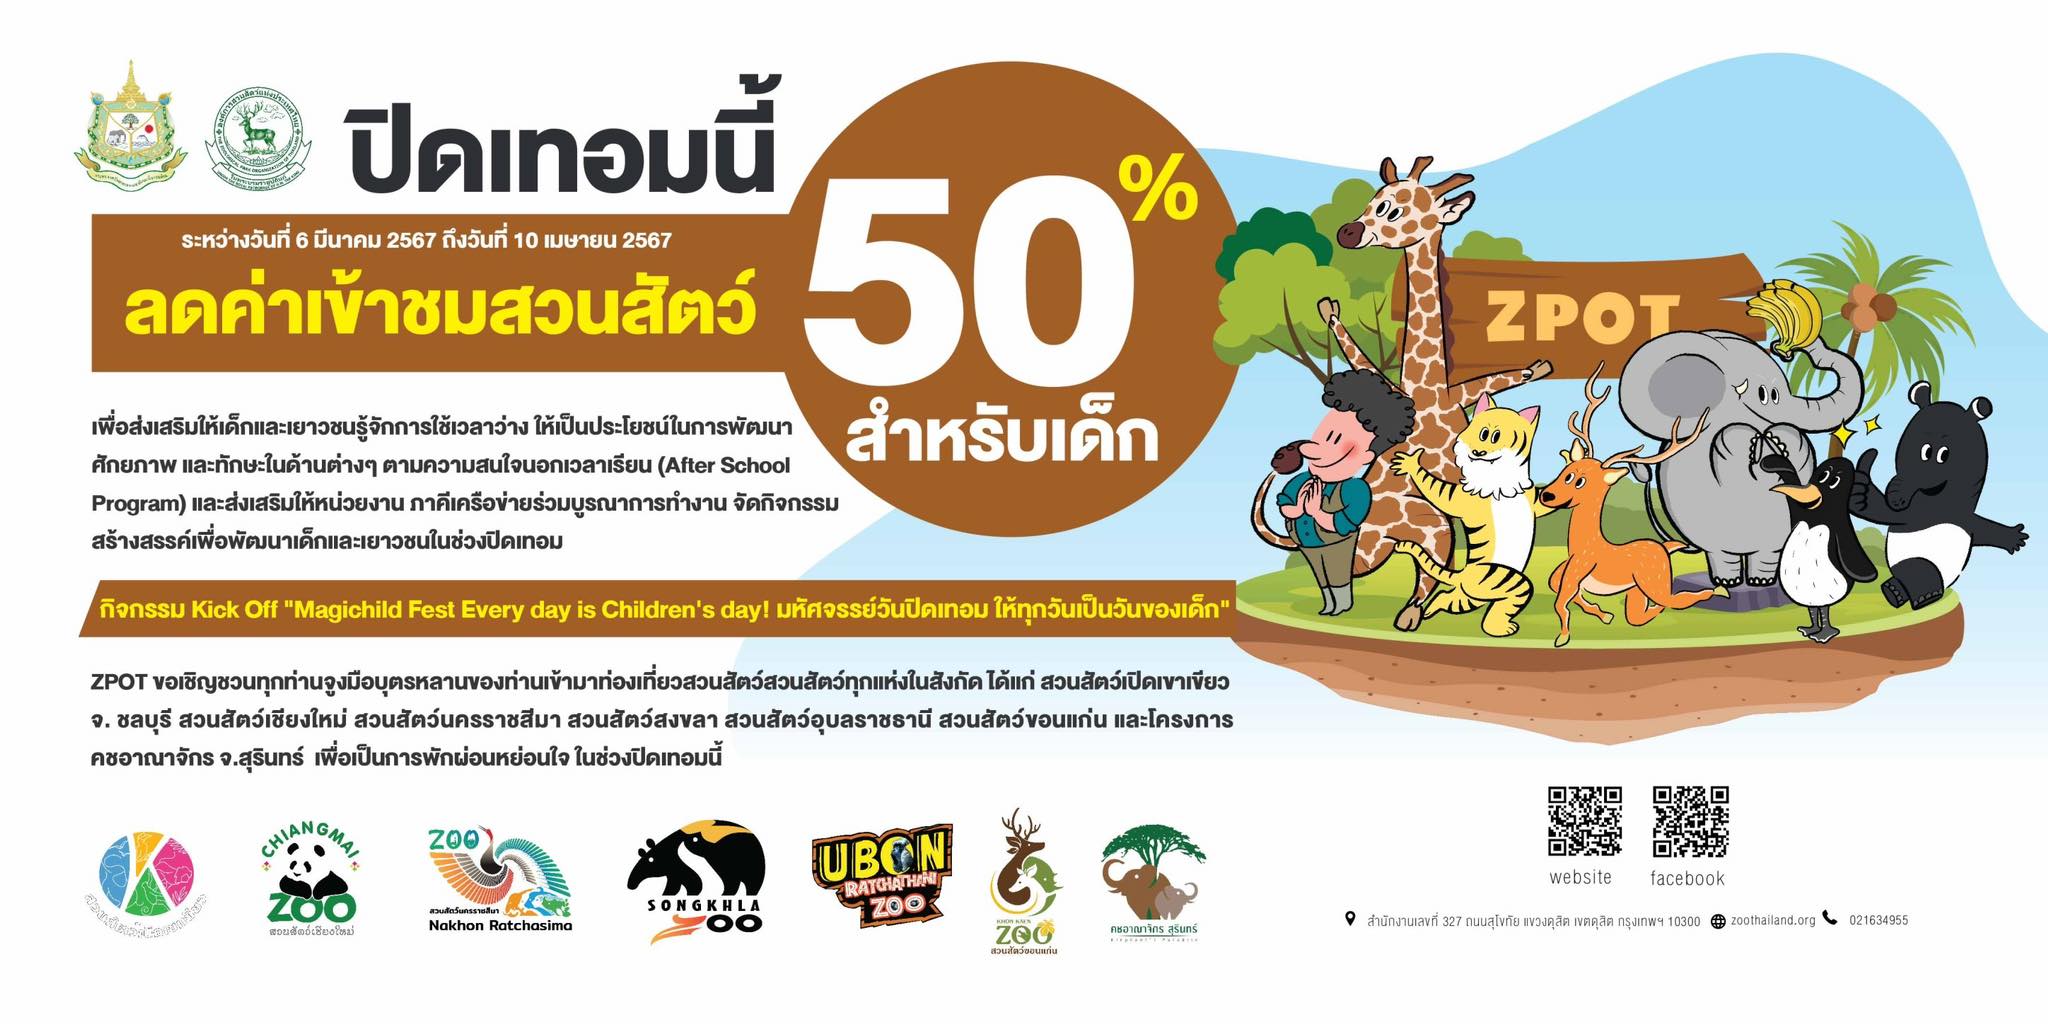 ปิดเทอมใหญ่ เด็กๆ เที่ยวสวนสัตว์ ลด50% 6 แห่งทั่วไทย